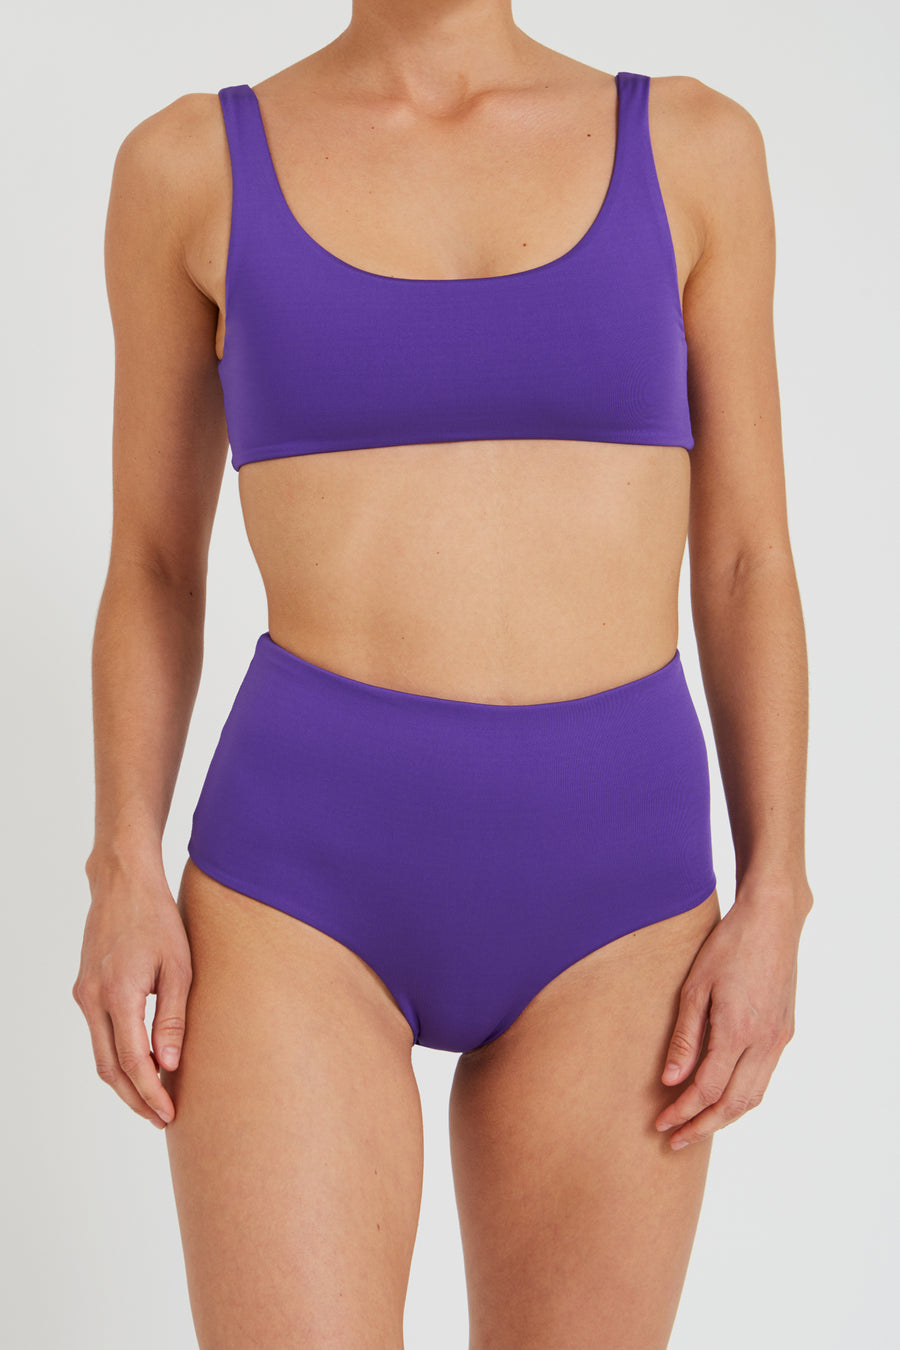 TOP – sporty, purple